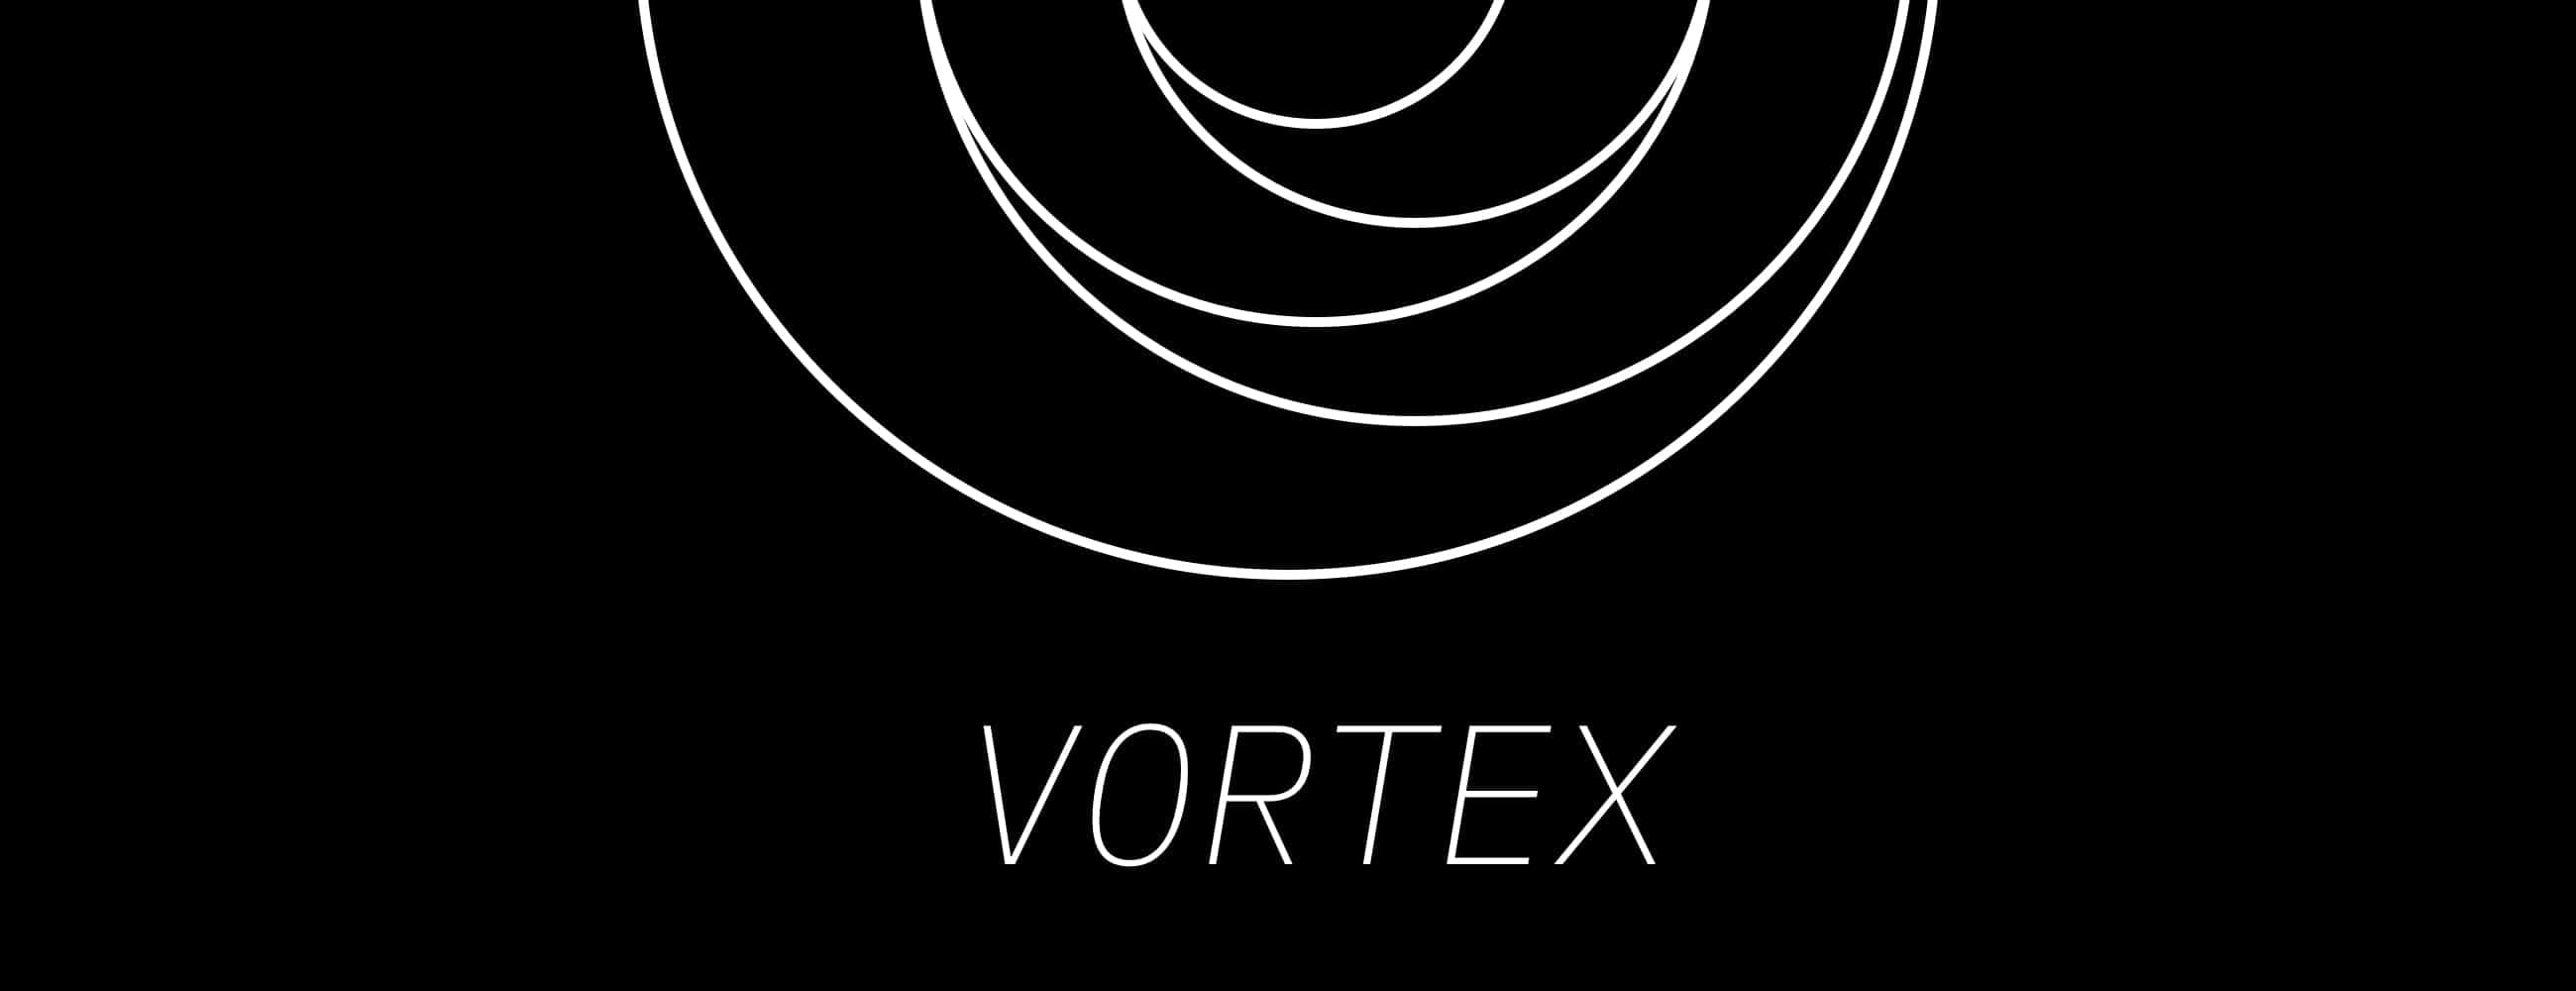 Vortex - Data-driven Visualization Live Wallpaper - JustZht's Portfolio |  Vortex - Data-driven Visualization Live Wallpaper - JustZht's Portfolio |